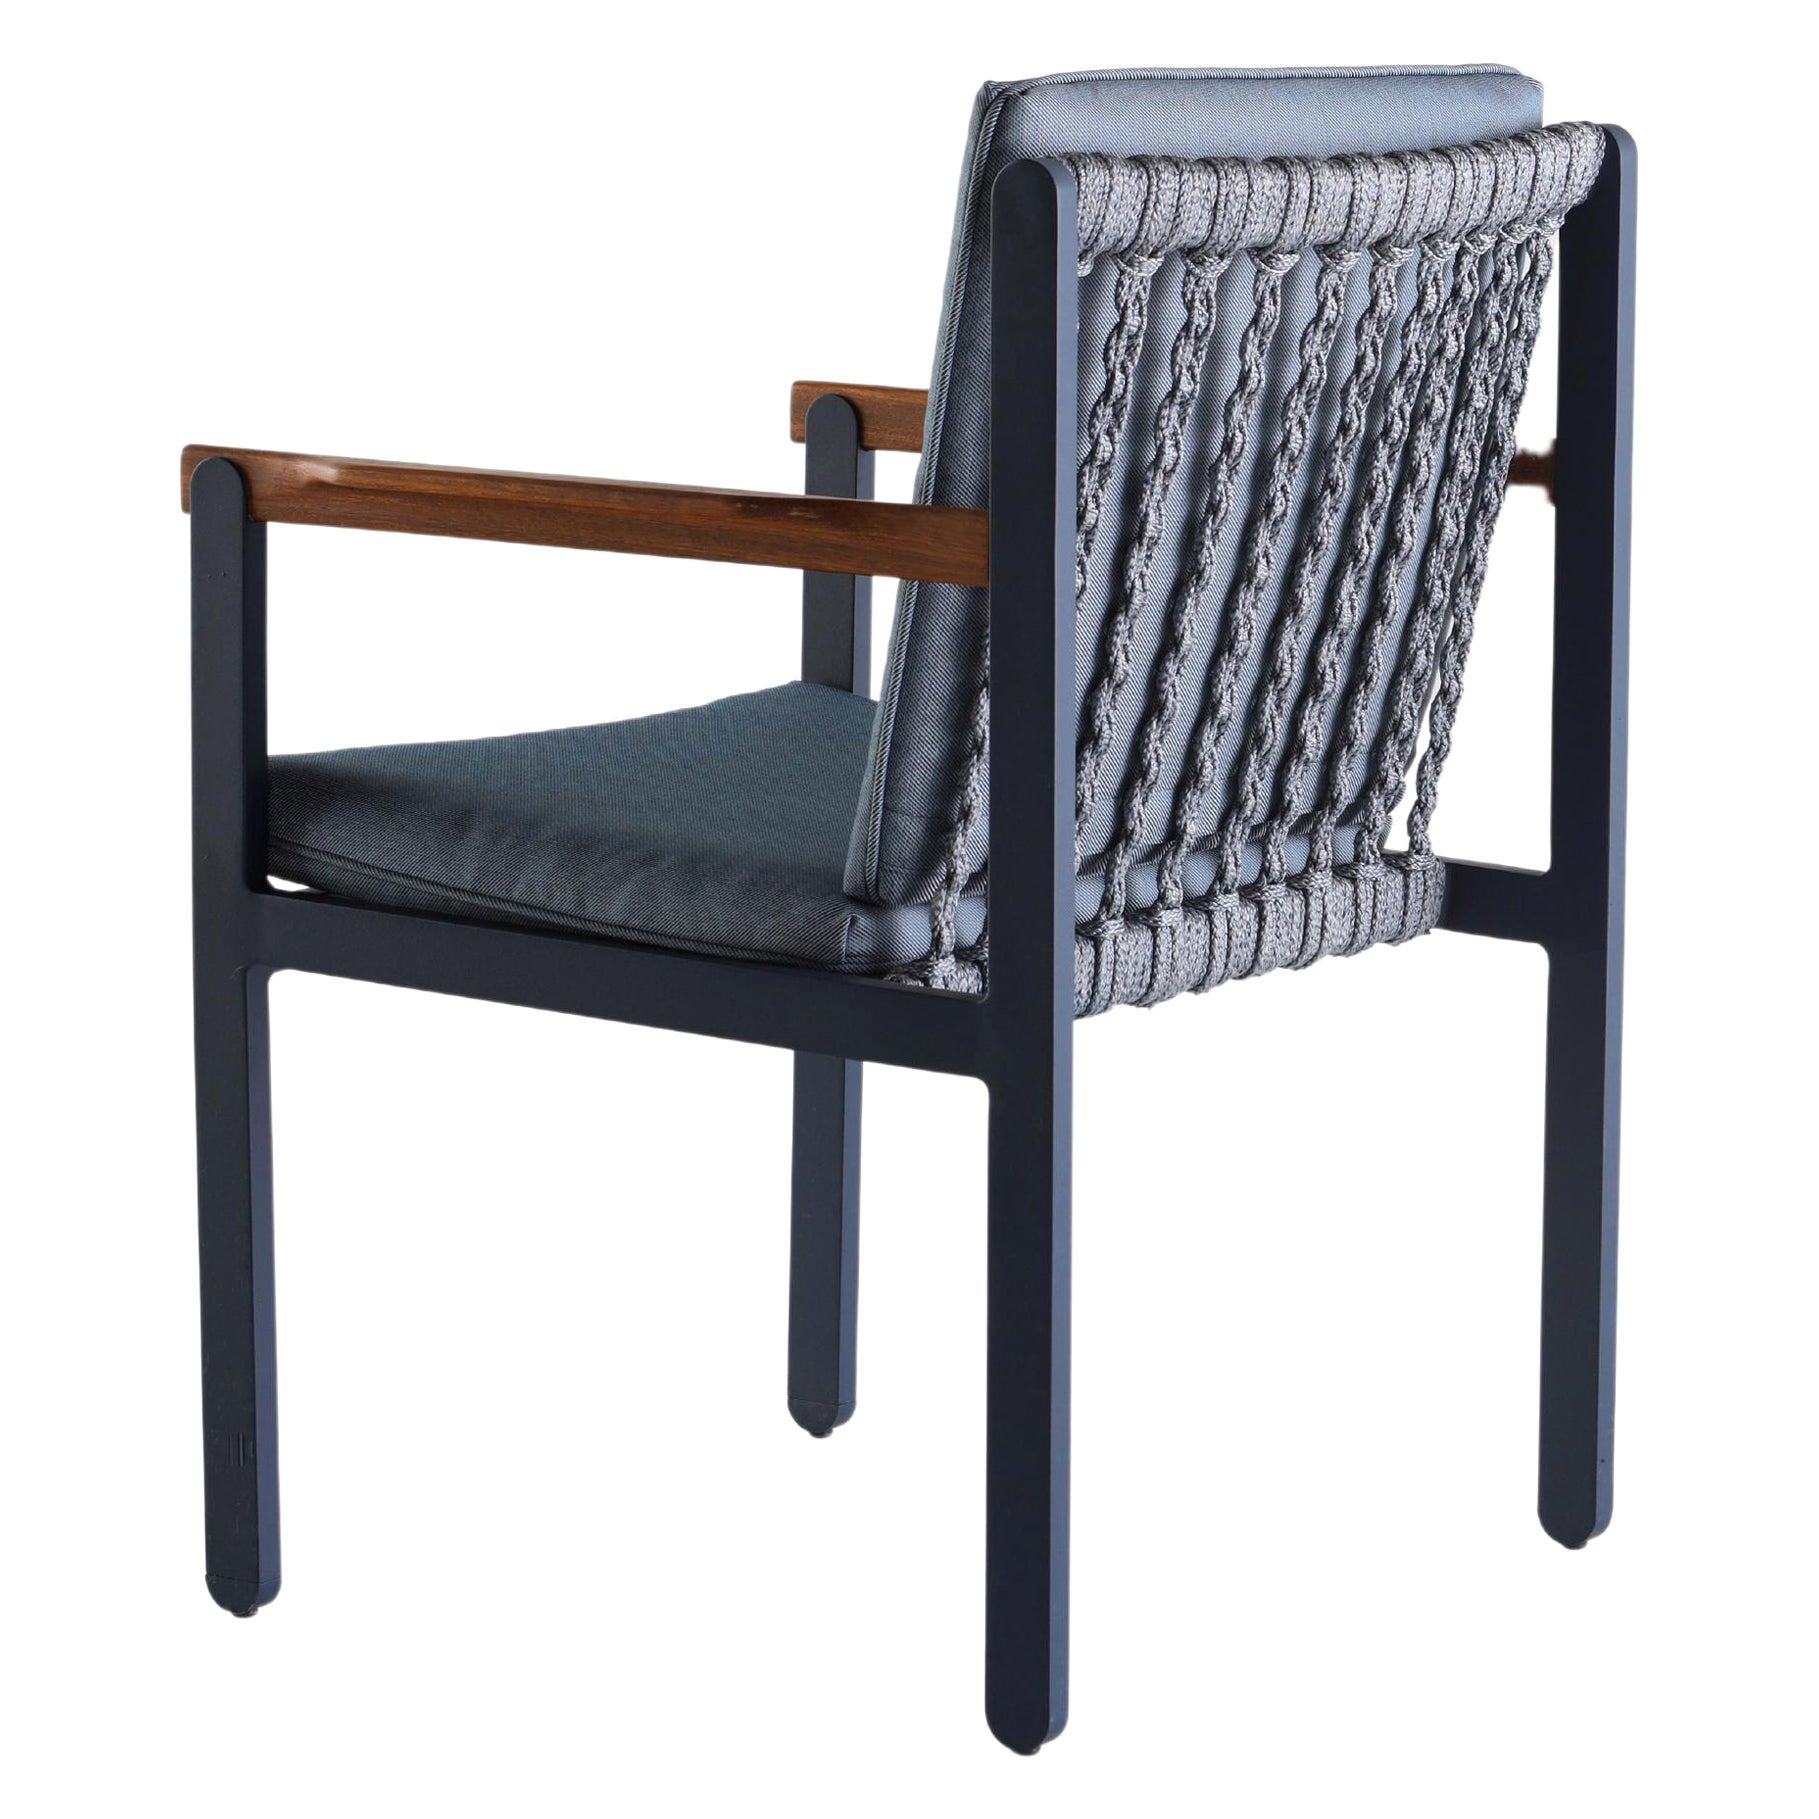 Chaise en métal, corde nautique et textiles pour l'extérieur ou l'intérieur